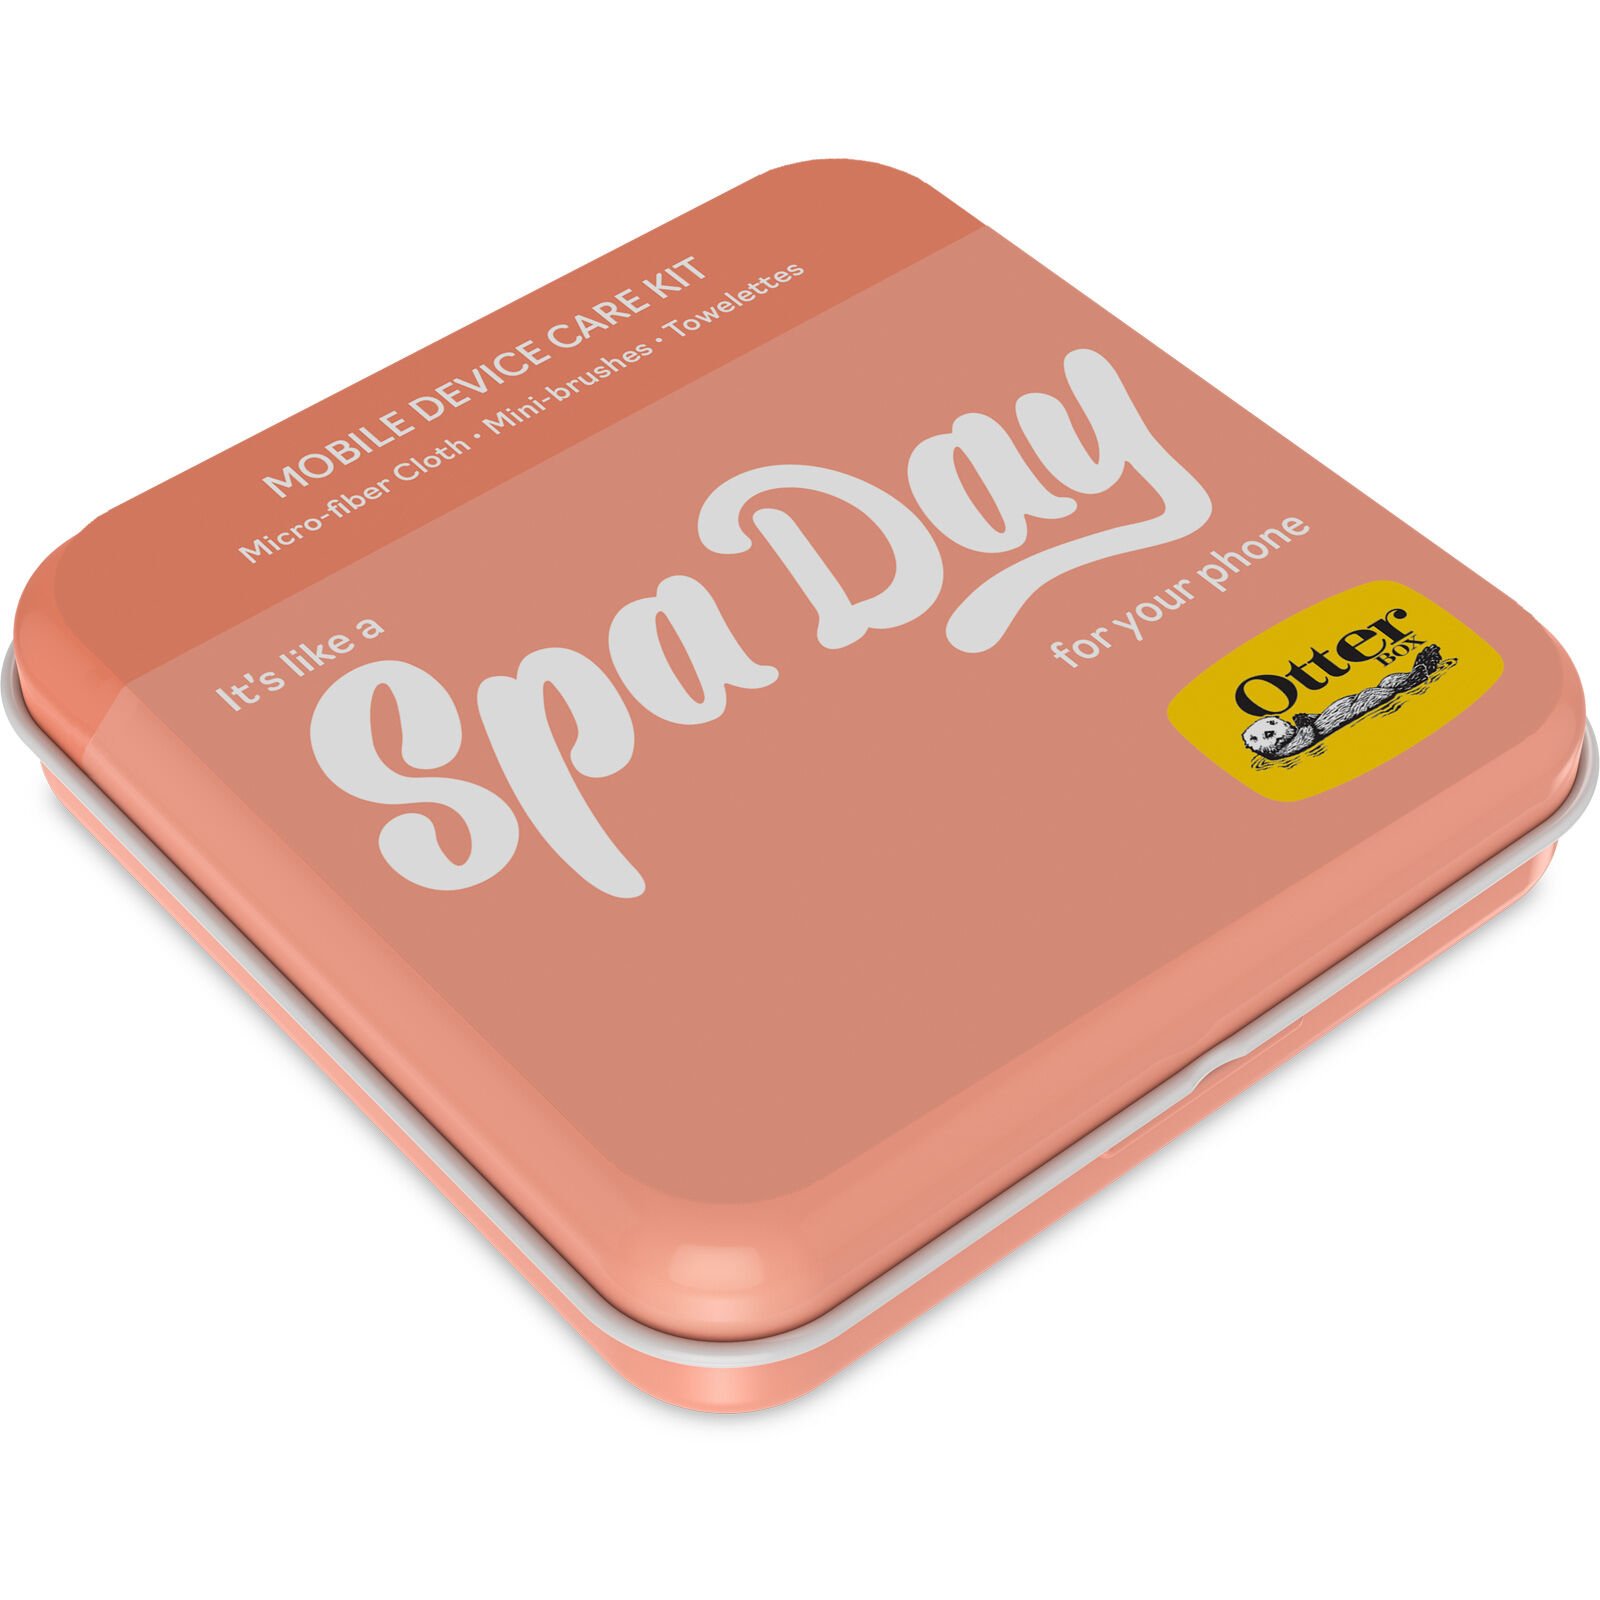 Device Care Kit Spa Day - Schoonmaaksetje